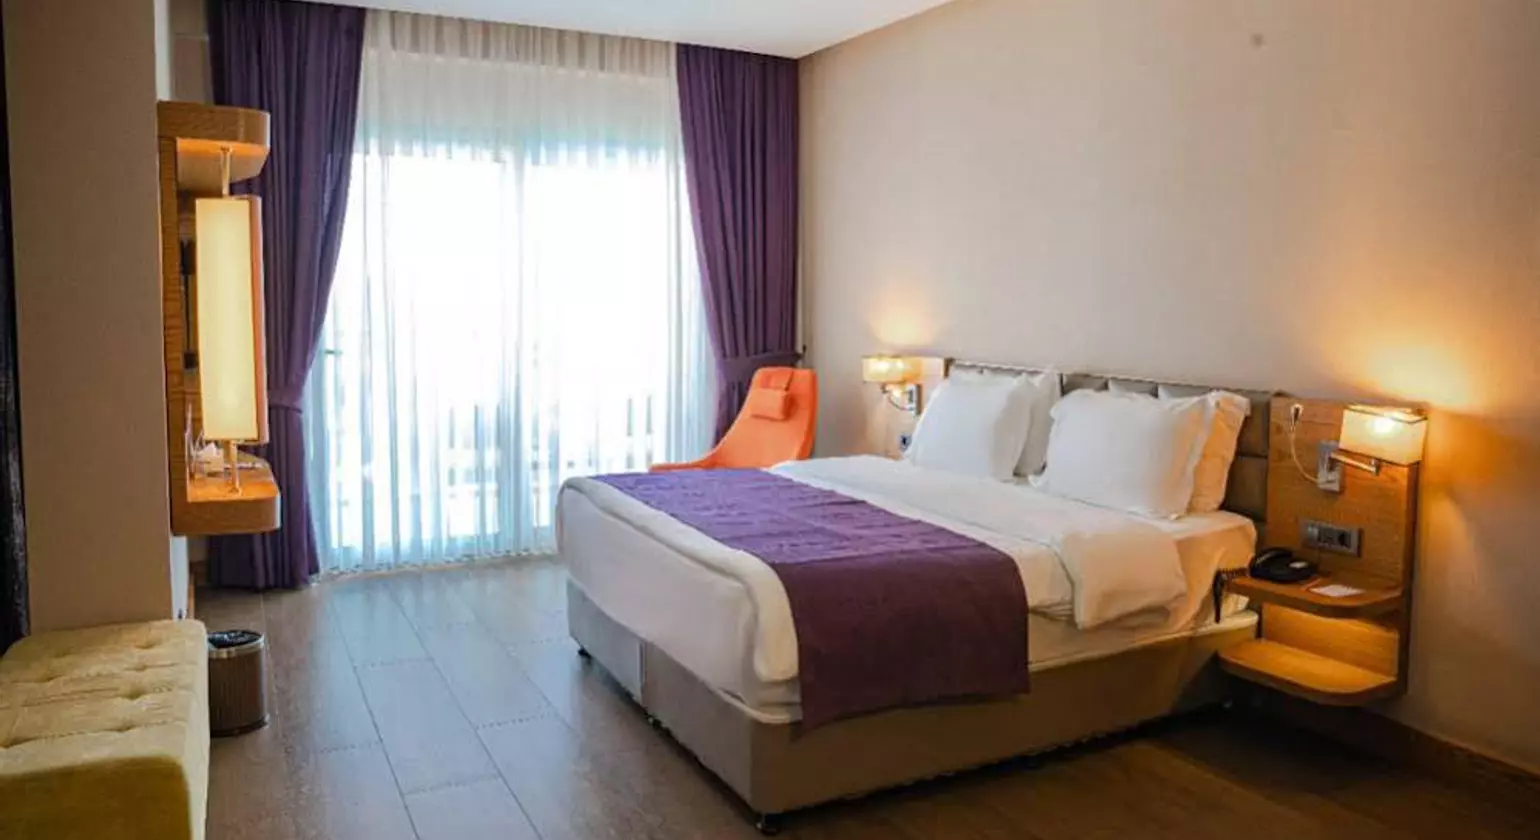 Casa De Maris Spa & Resort Hotel